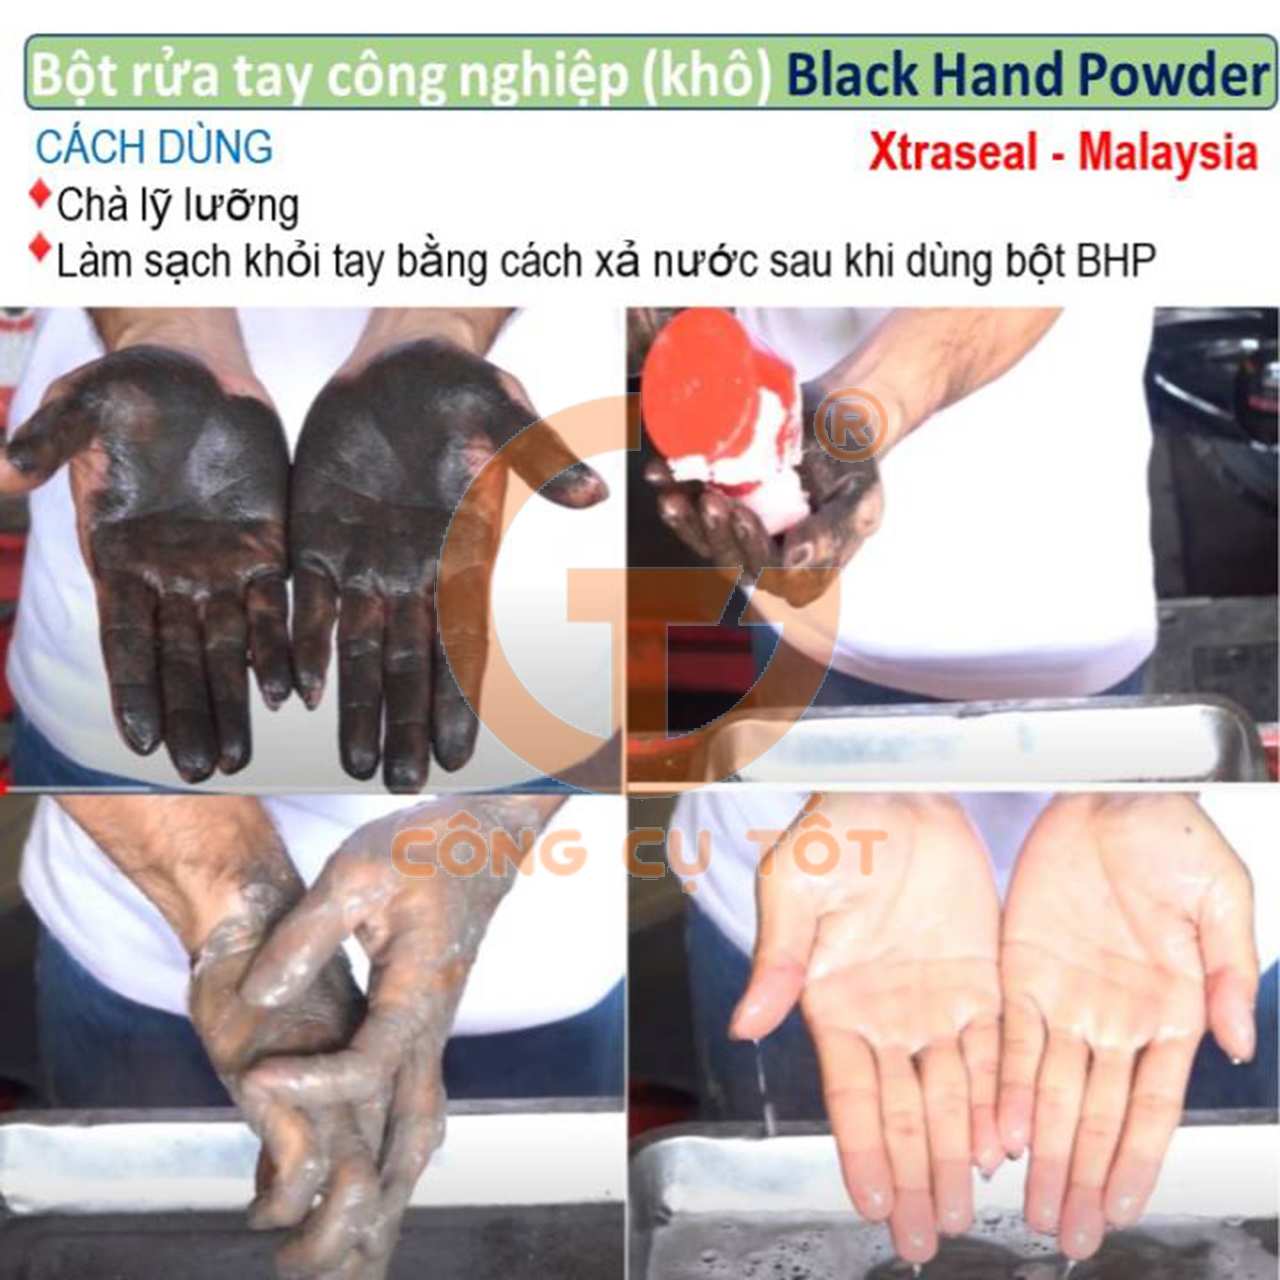 Cách sử dụng bột rửa tay khô